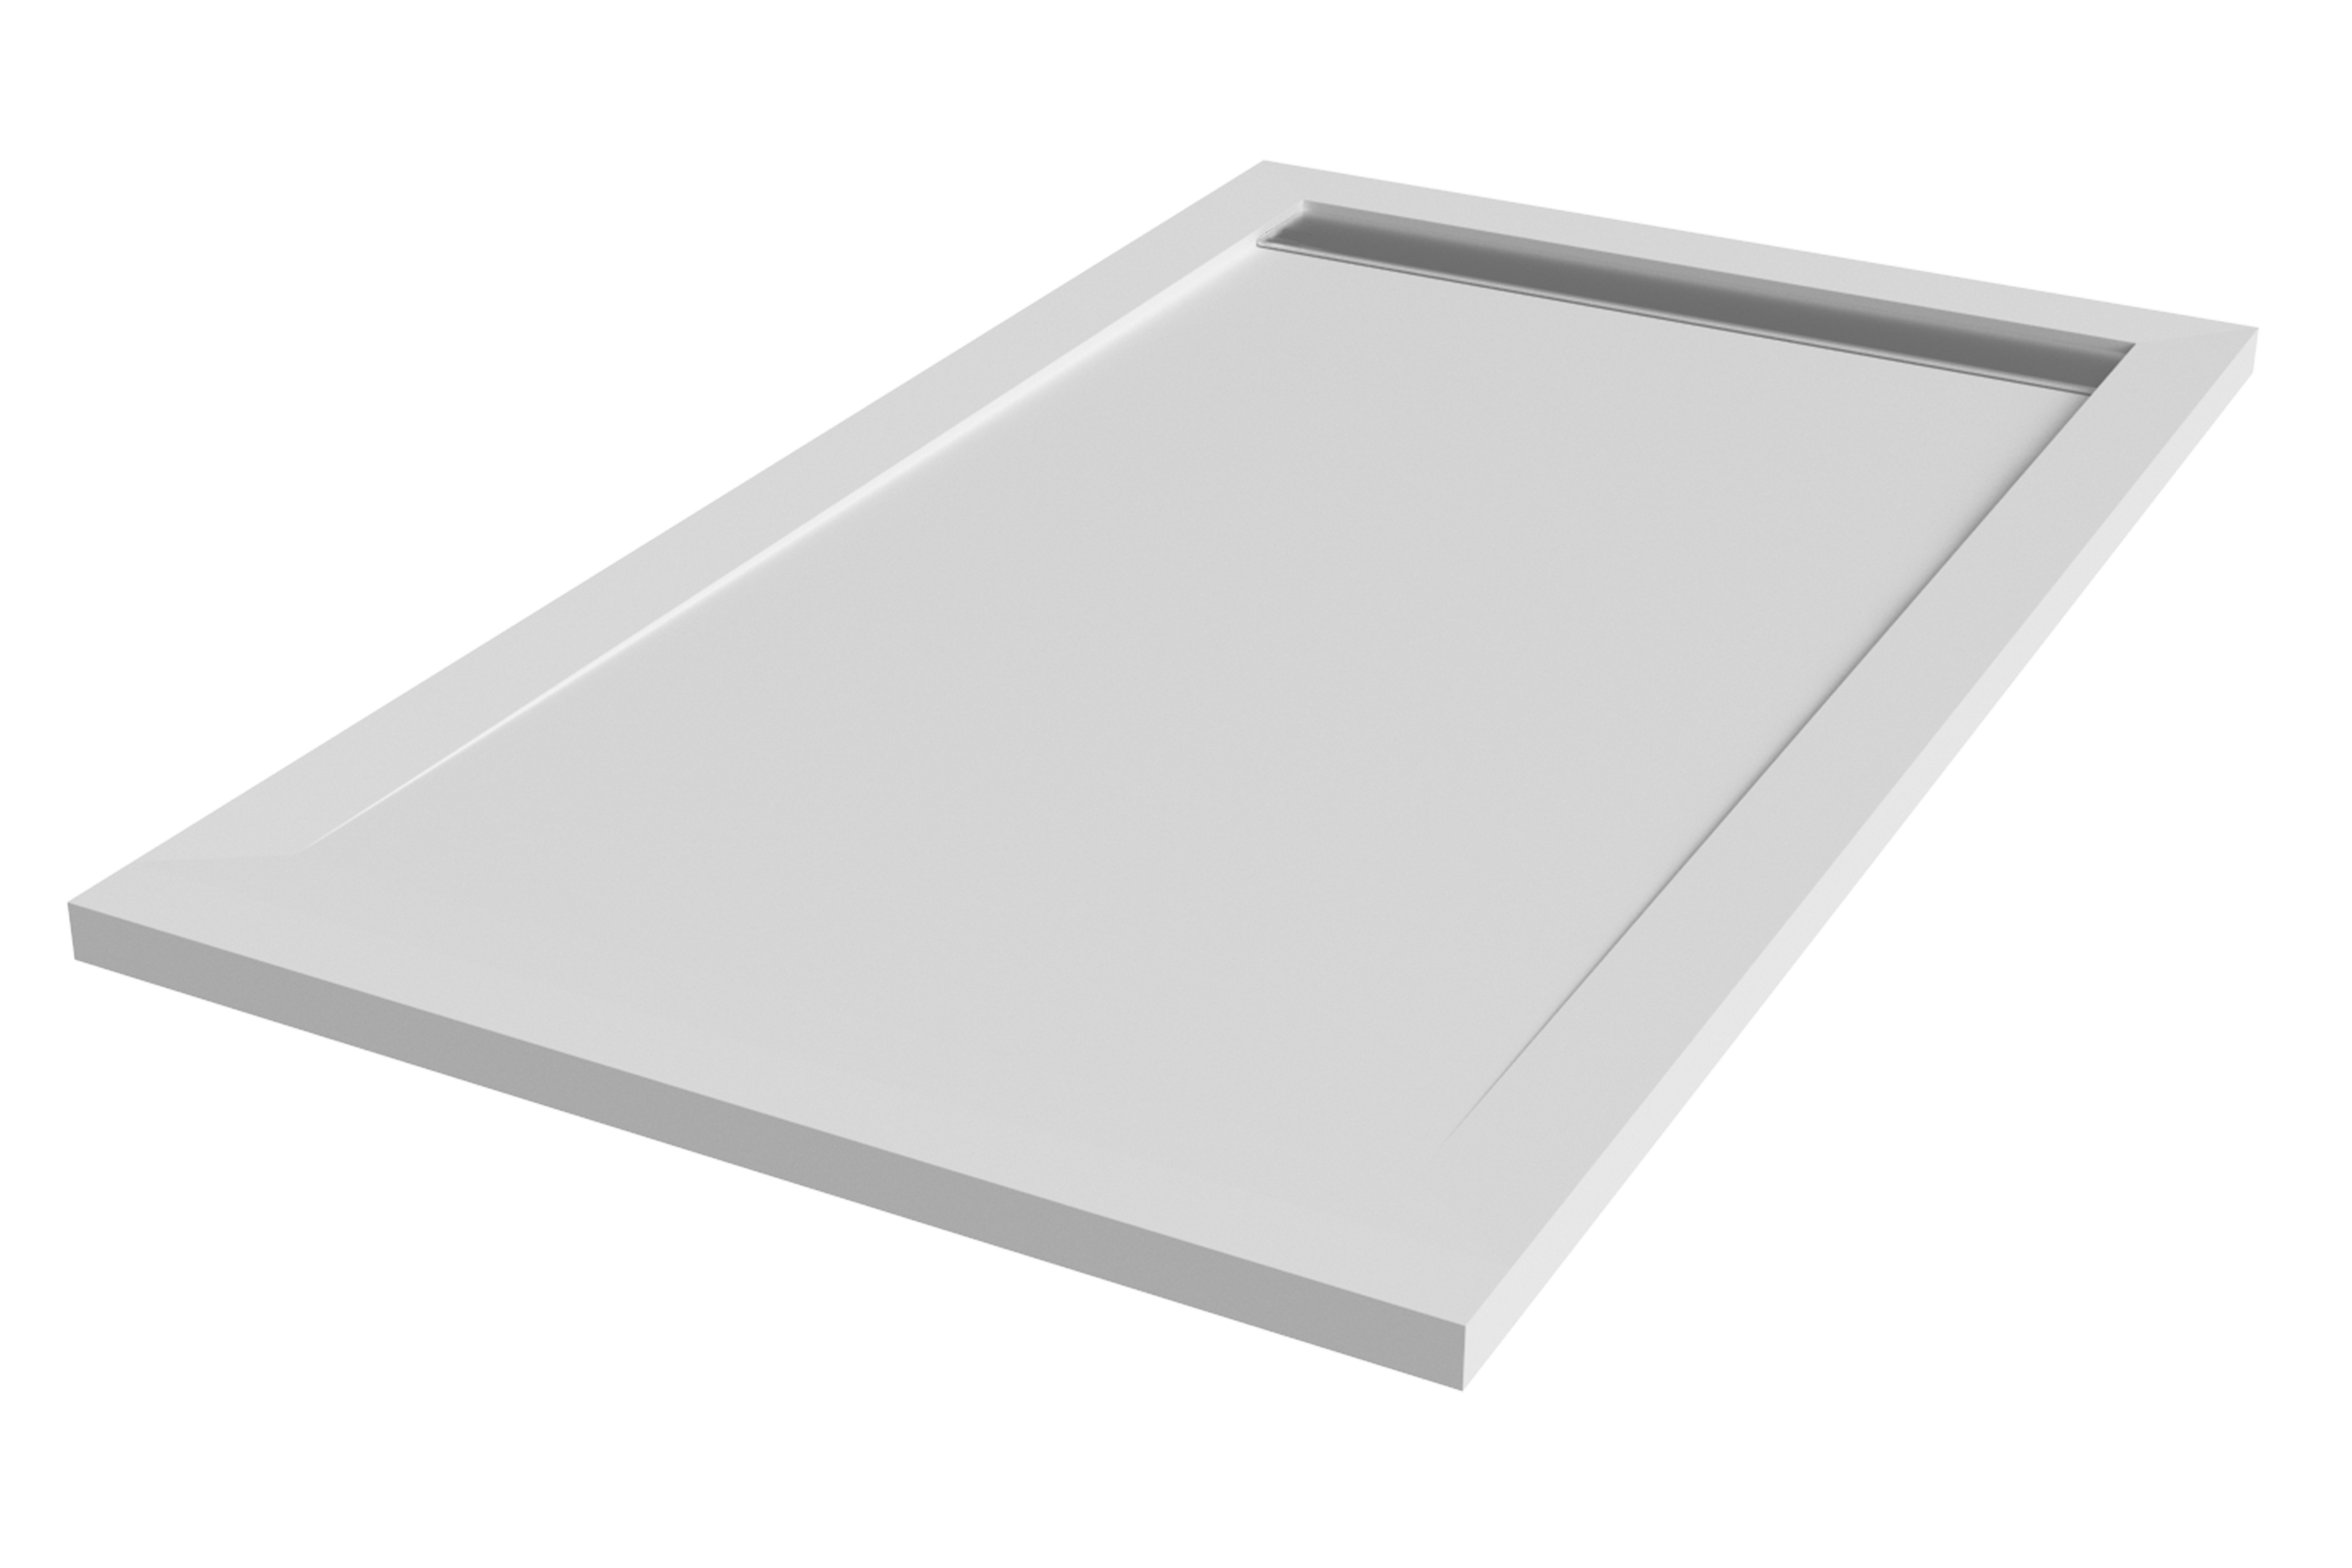 Plato de ducha kaliso 180x100 cm blanco